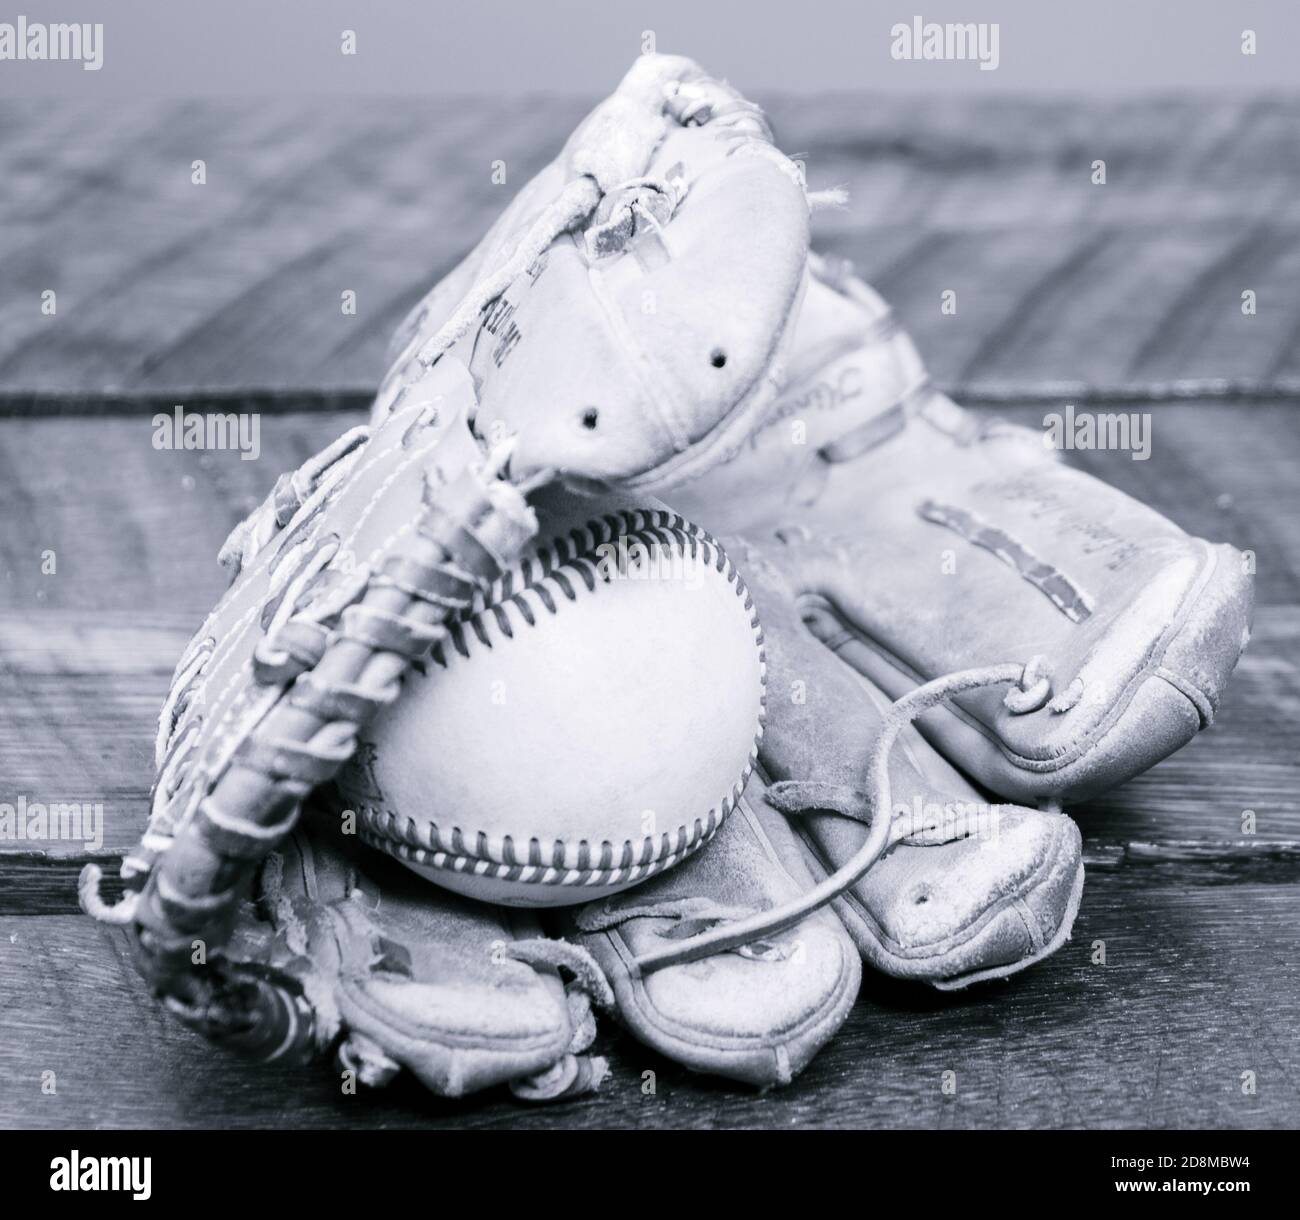 Ein Wetter-Baseballhandschuh aus Leder mit einem Baseball im Handschuh. Stockfoto